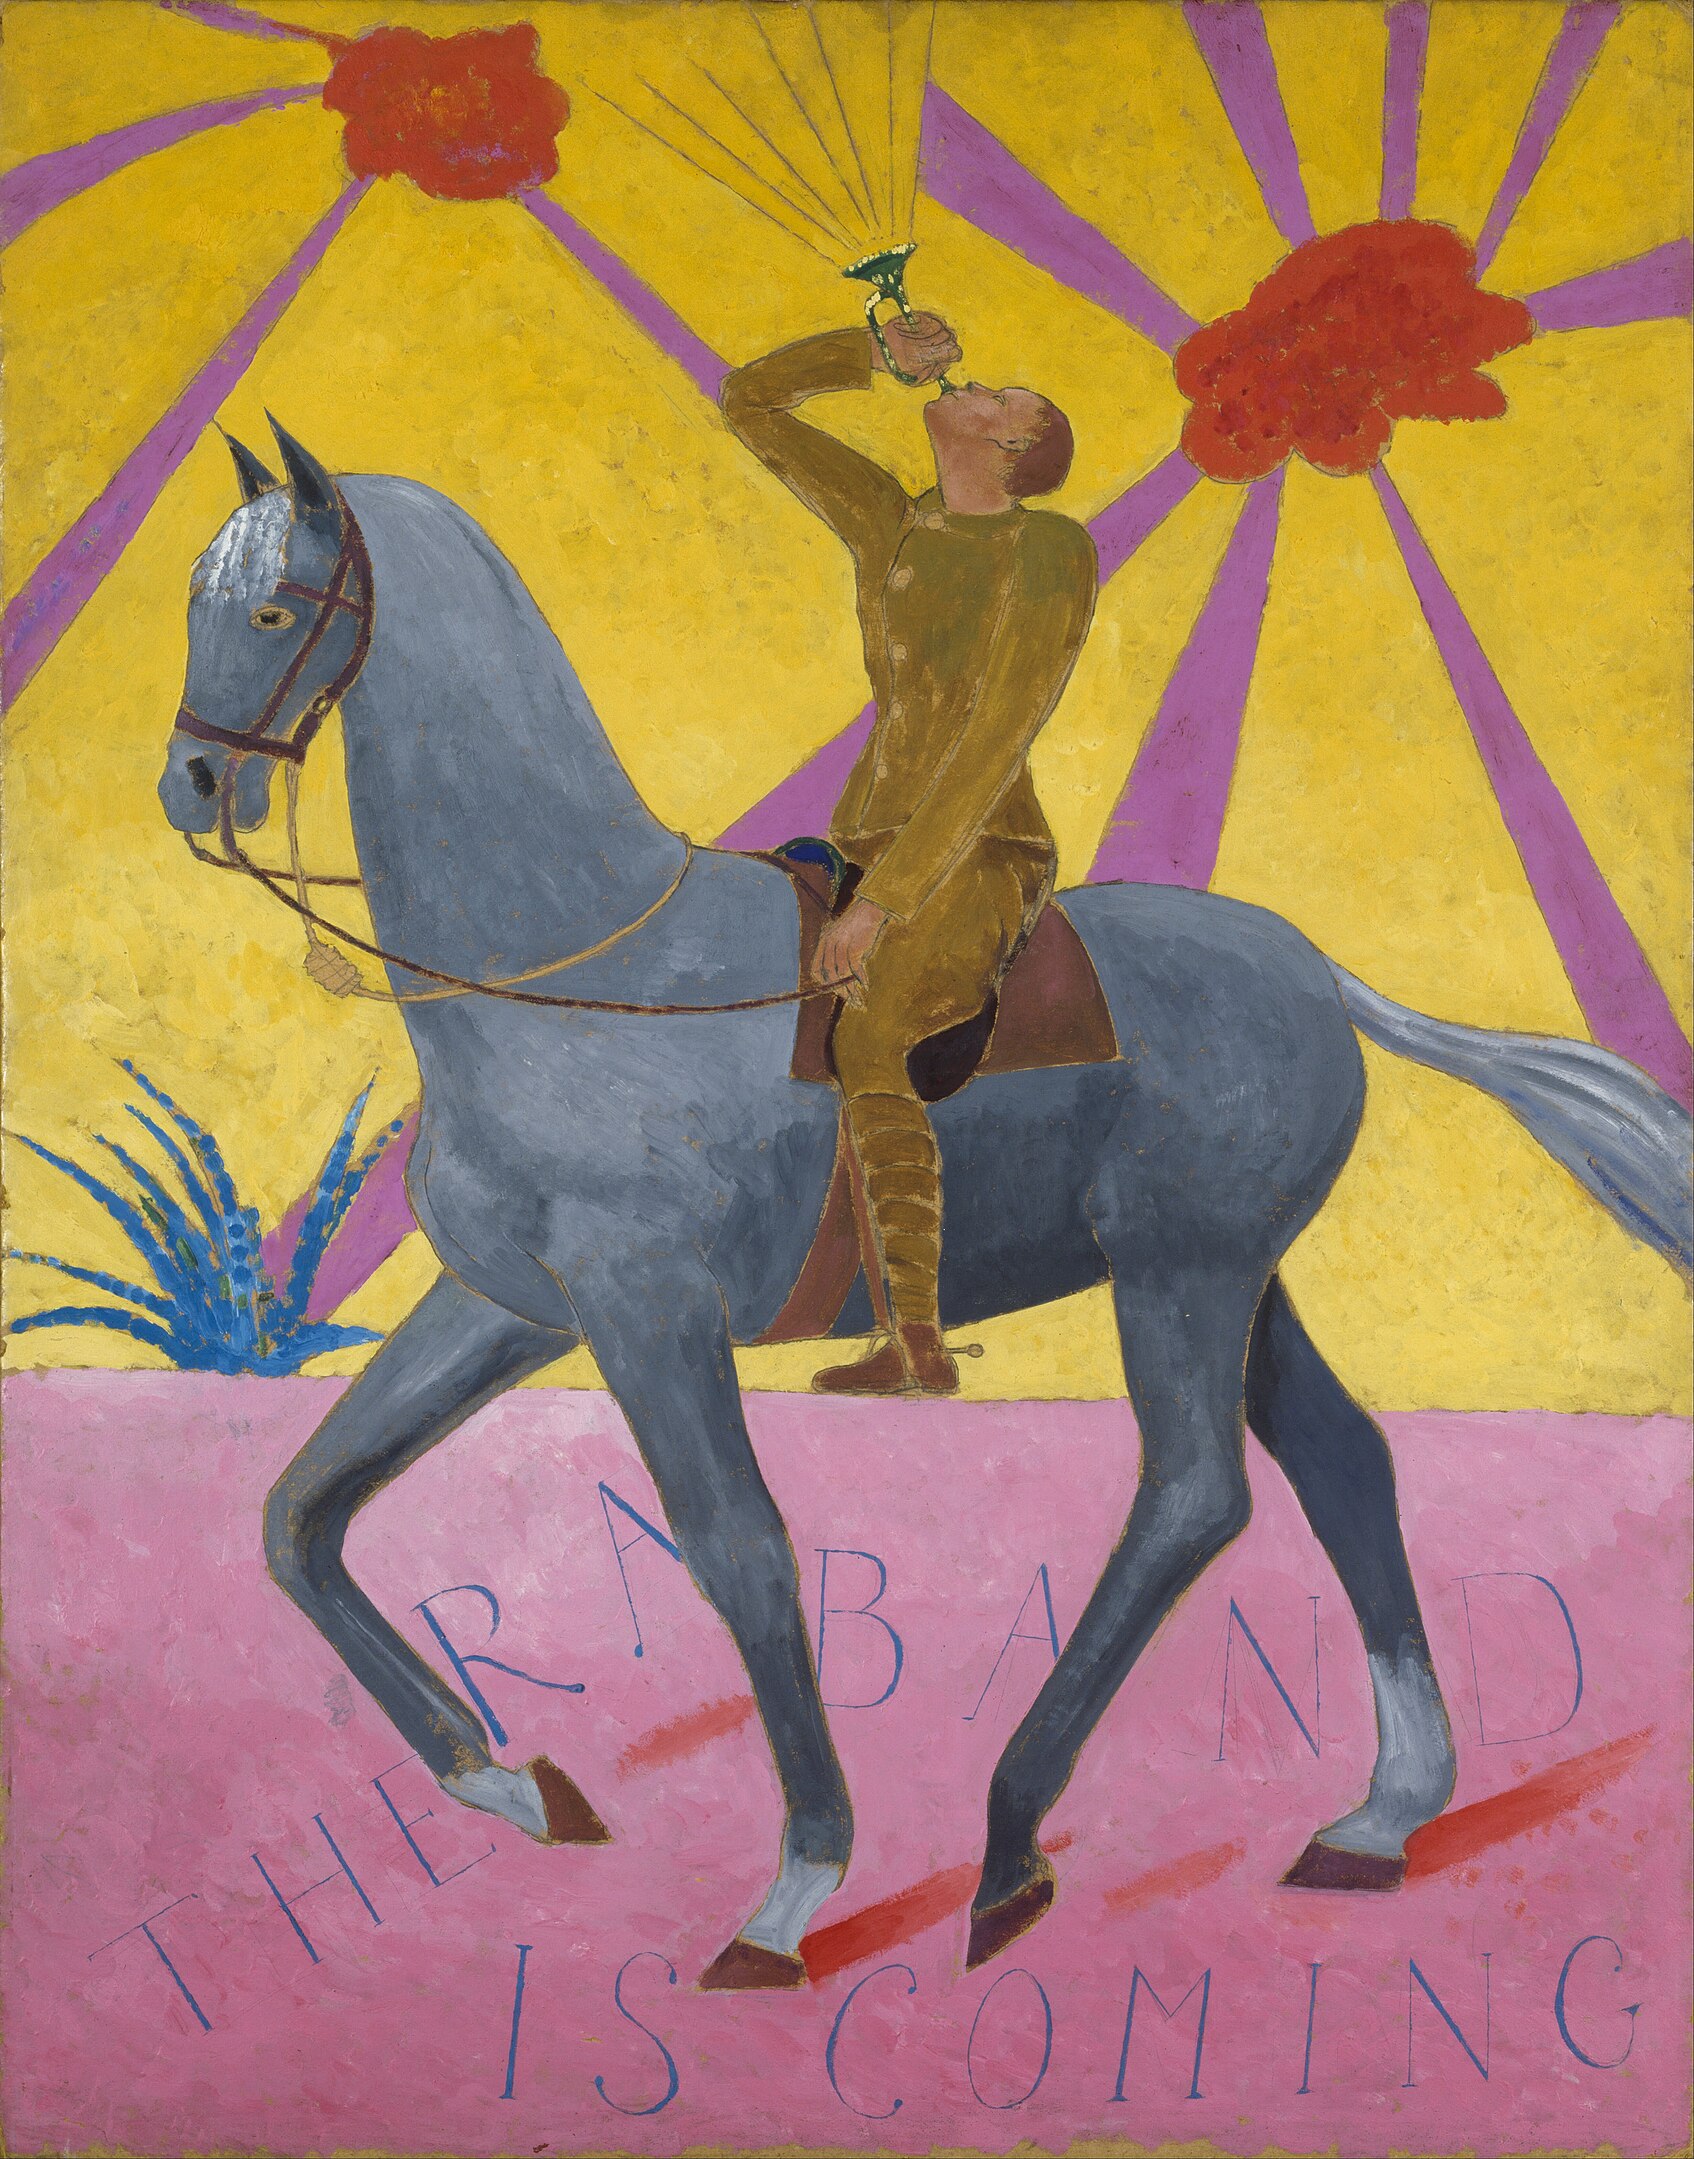 La banda del regimiento by Darsie Japp - 1918 - 91,4 x 71,1 cm Museo Imperial de la Guerra